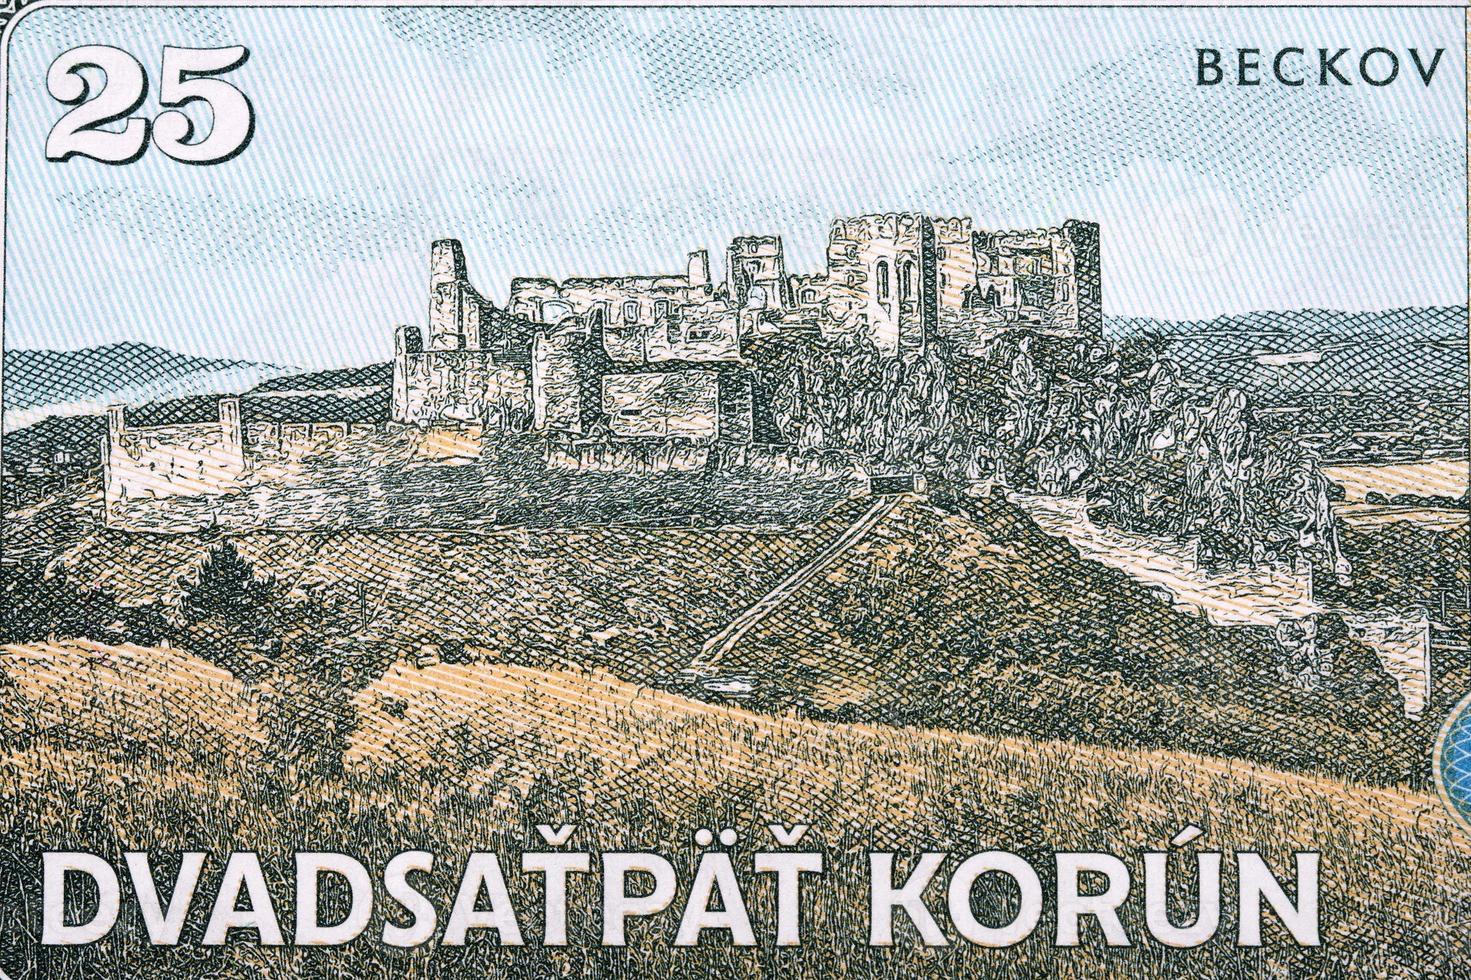 restos de beckov castillo desde dinero foto